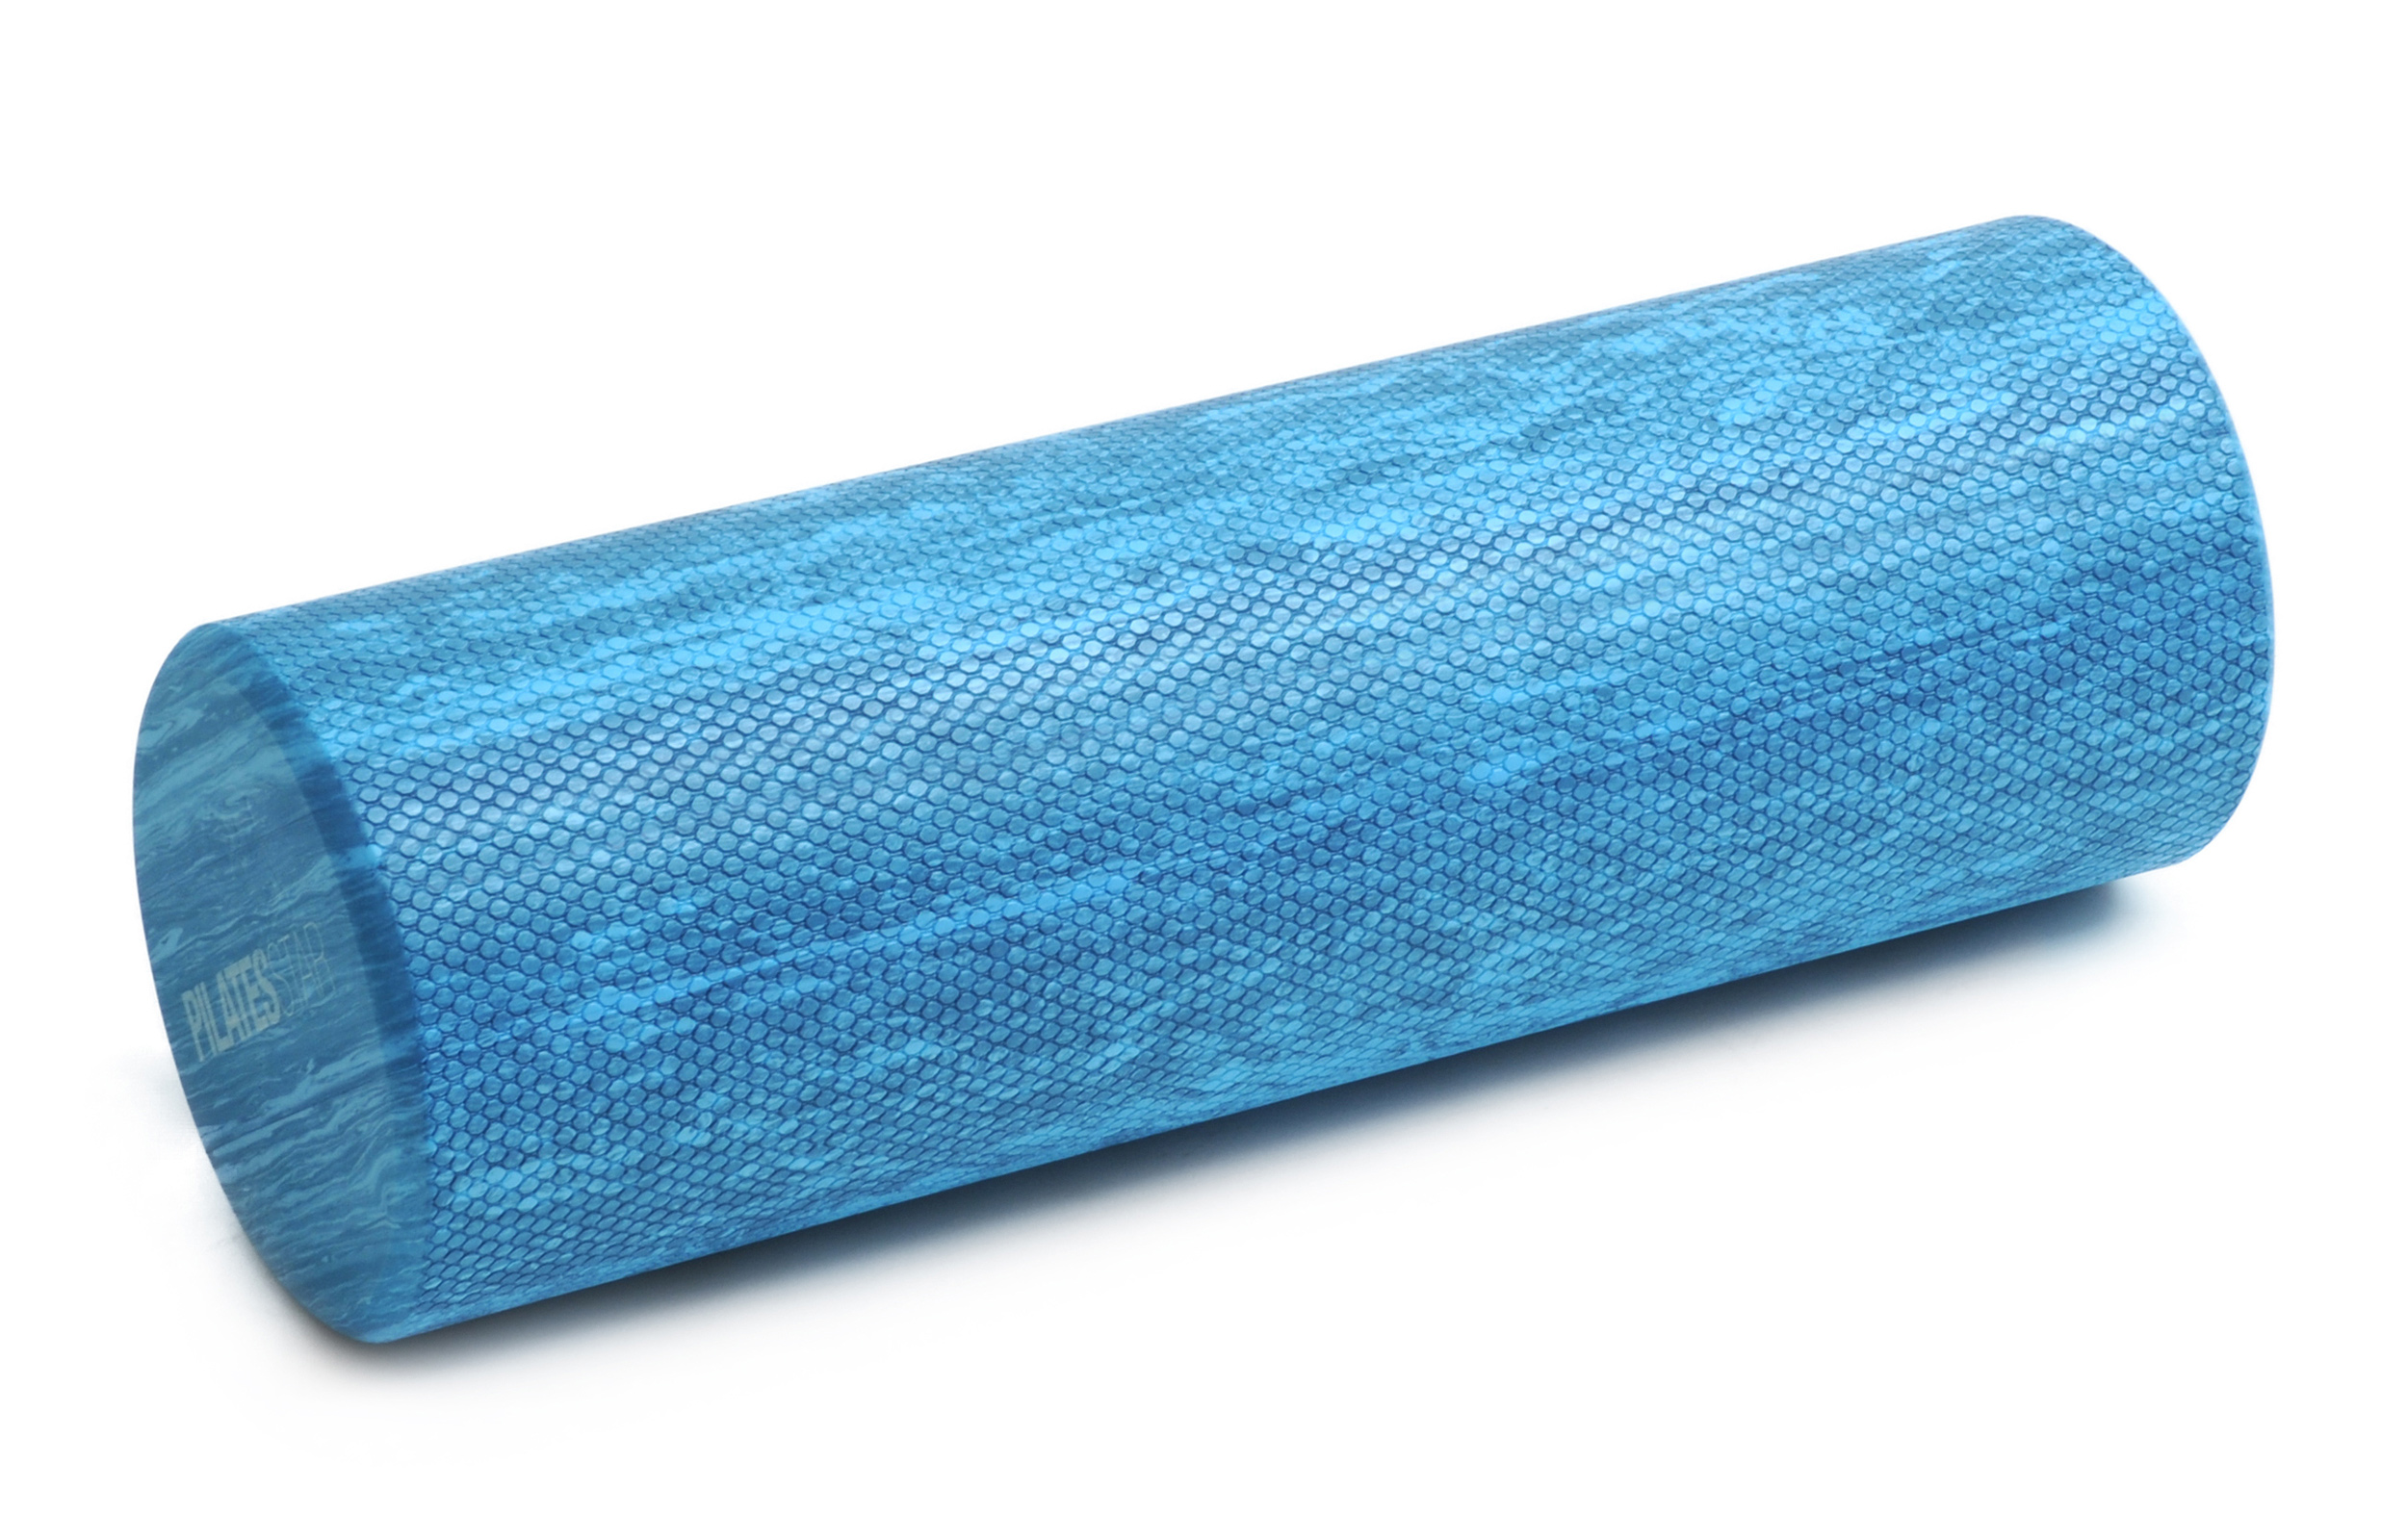 Faszien Rolle Yoga Foam Roller Pilates Massagerolle Faszientraining rot 